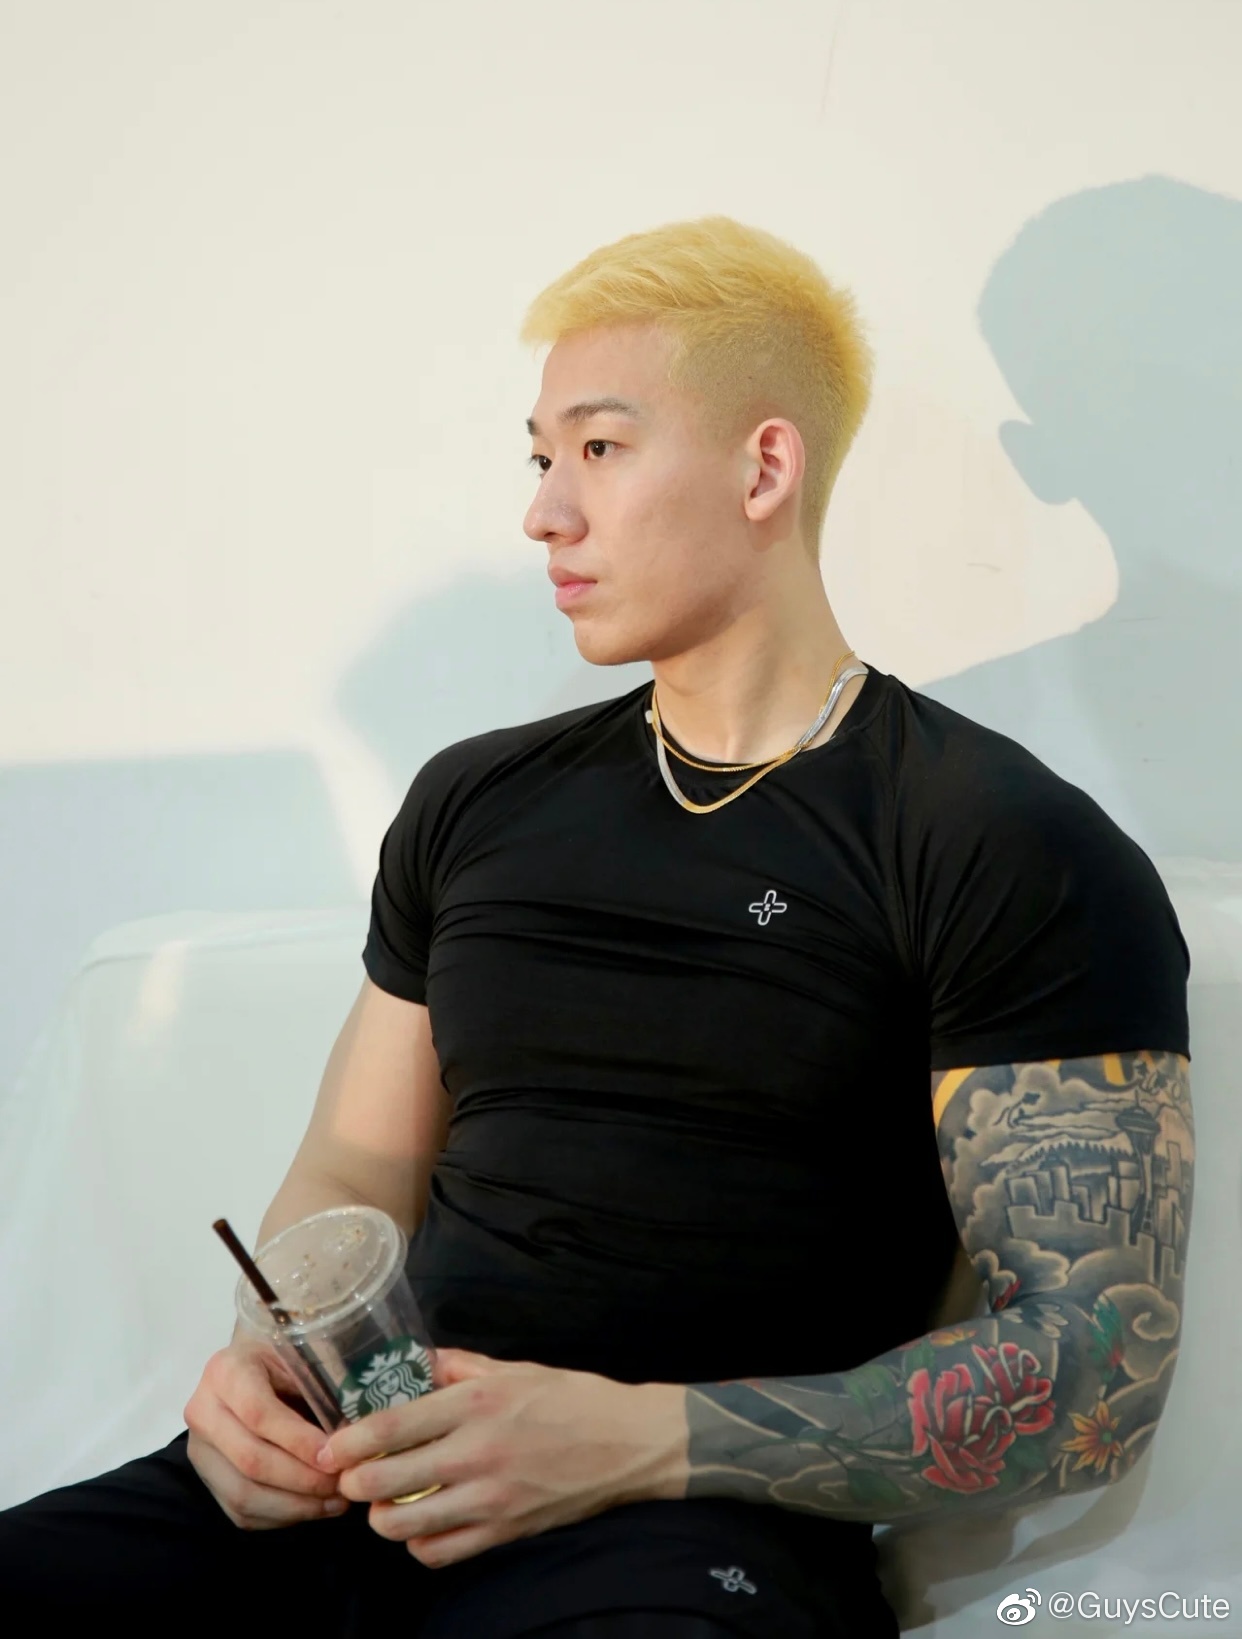 韩国欧巴自拍秀肌肉纹身 肤白貌美的小哥哥(4)-日韩帅哥图片-帅哥图库网